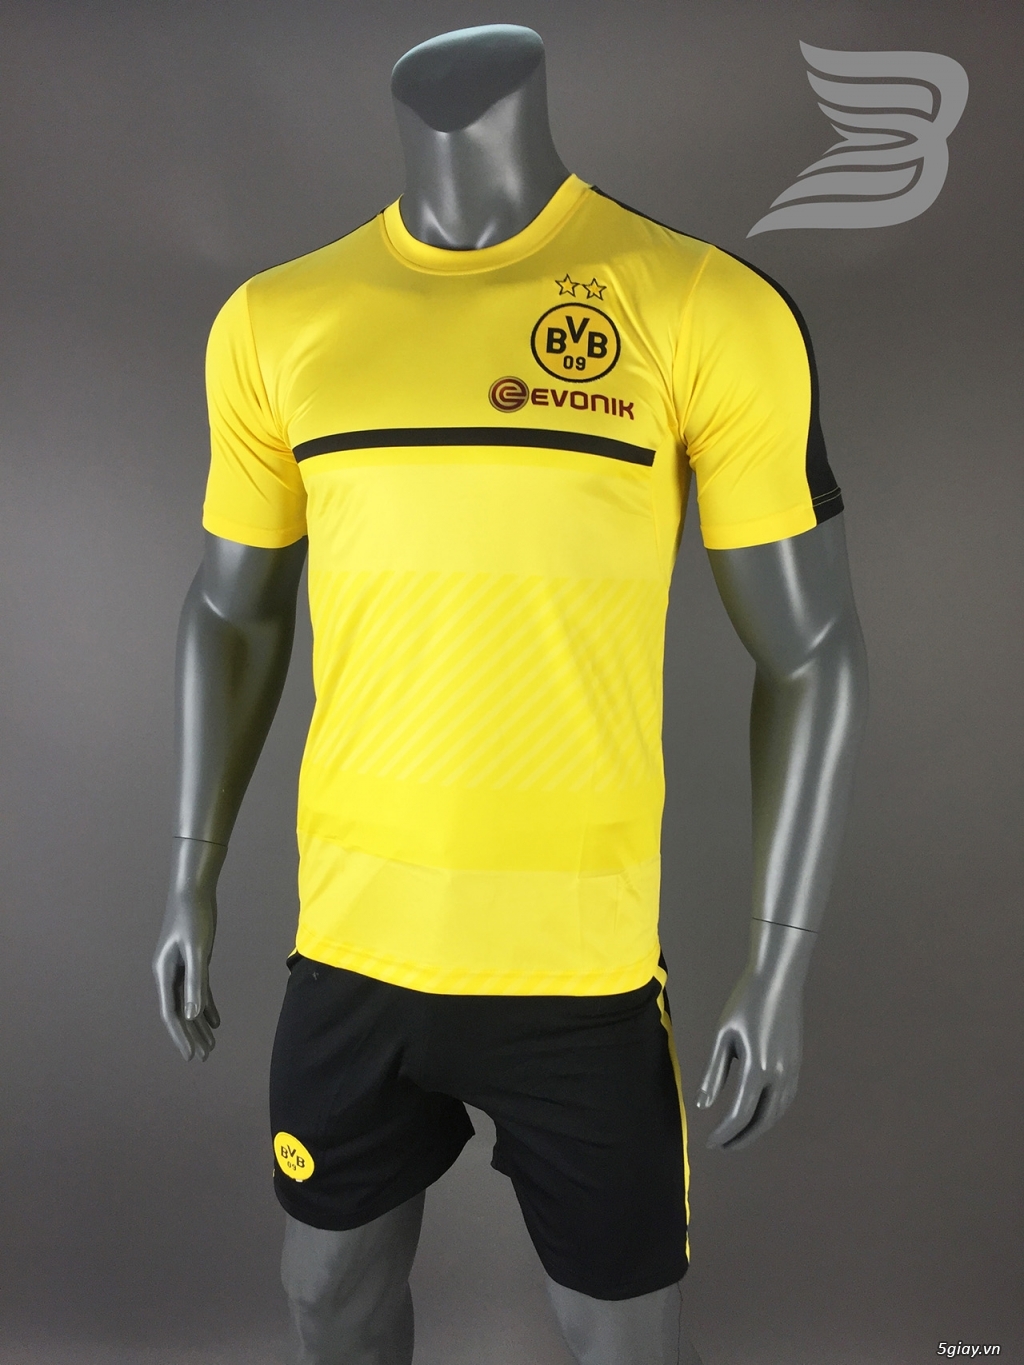 BẢO UYÊN SPORT - Chuyên cung cấp quần áo bóng đá với giá cạnh tranh kèm nhiều ưu đãi - 18